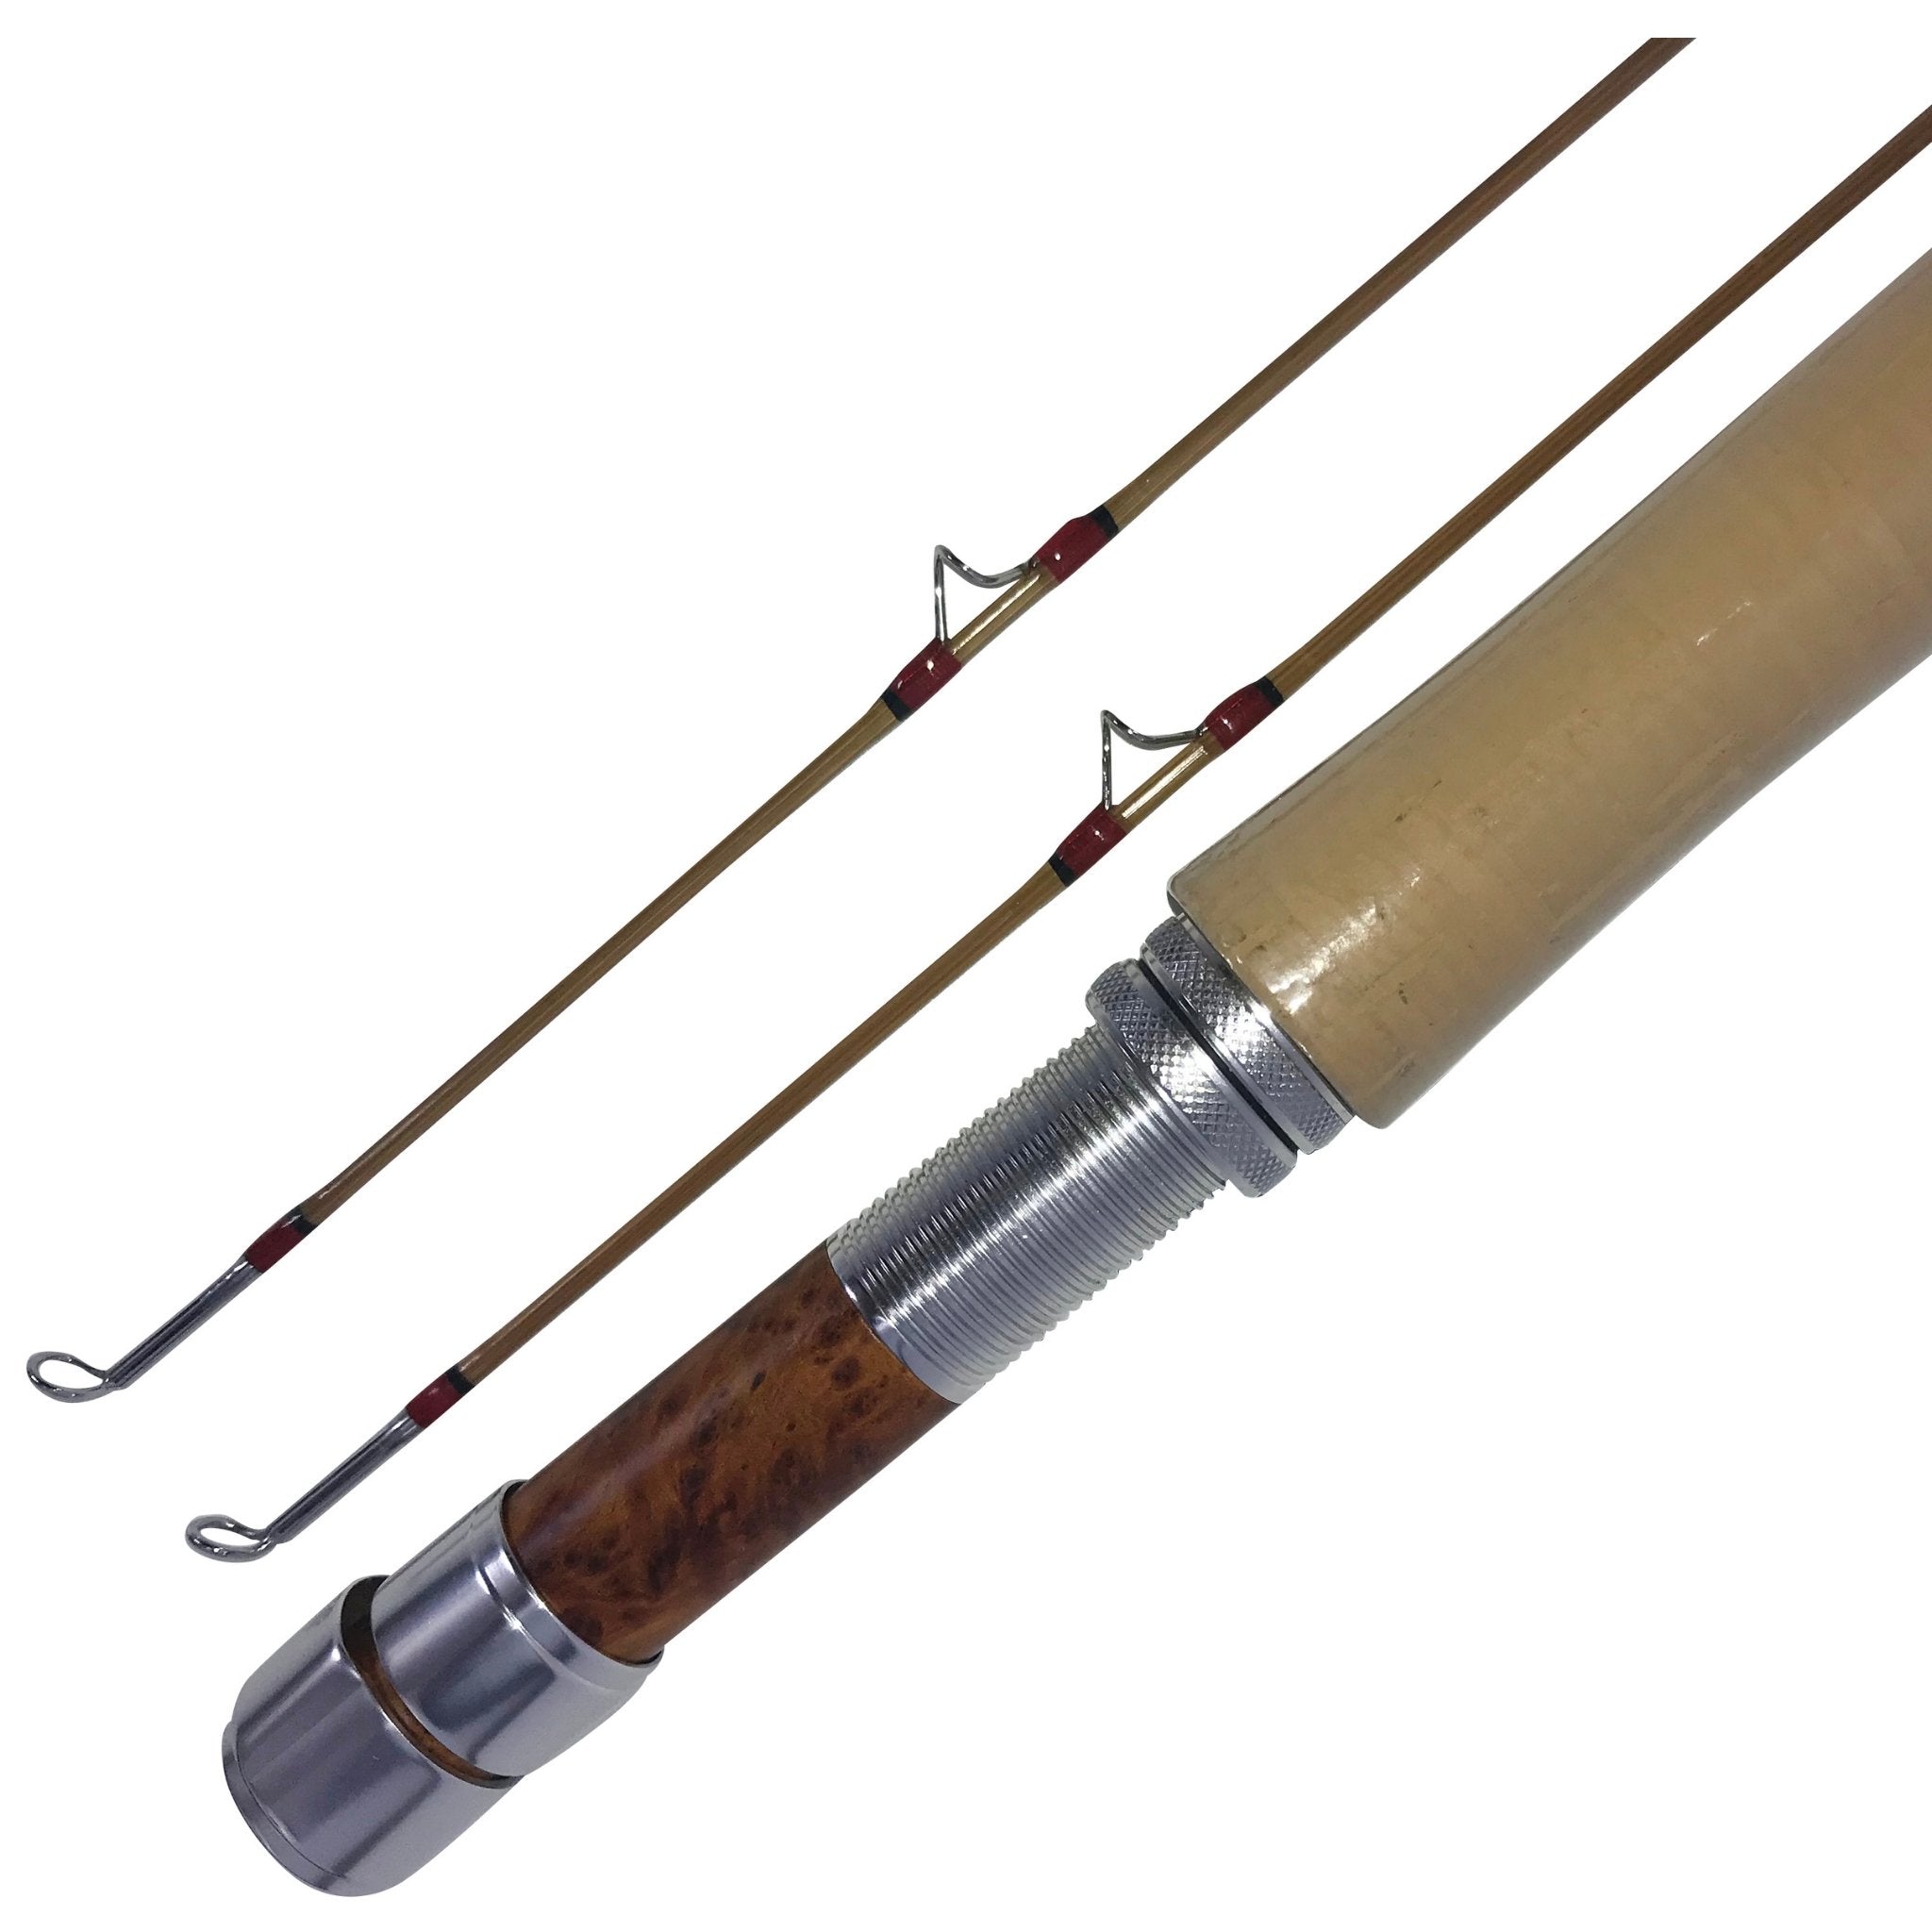 6'6-3 wt/ZHUSRODS Bamboo Fly Rod Blanks+Nickel silver ferrule/Fishing Rods